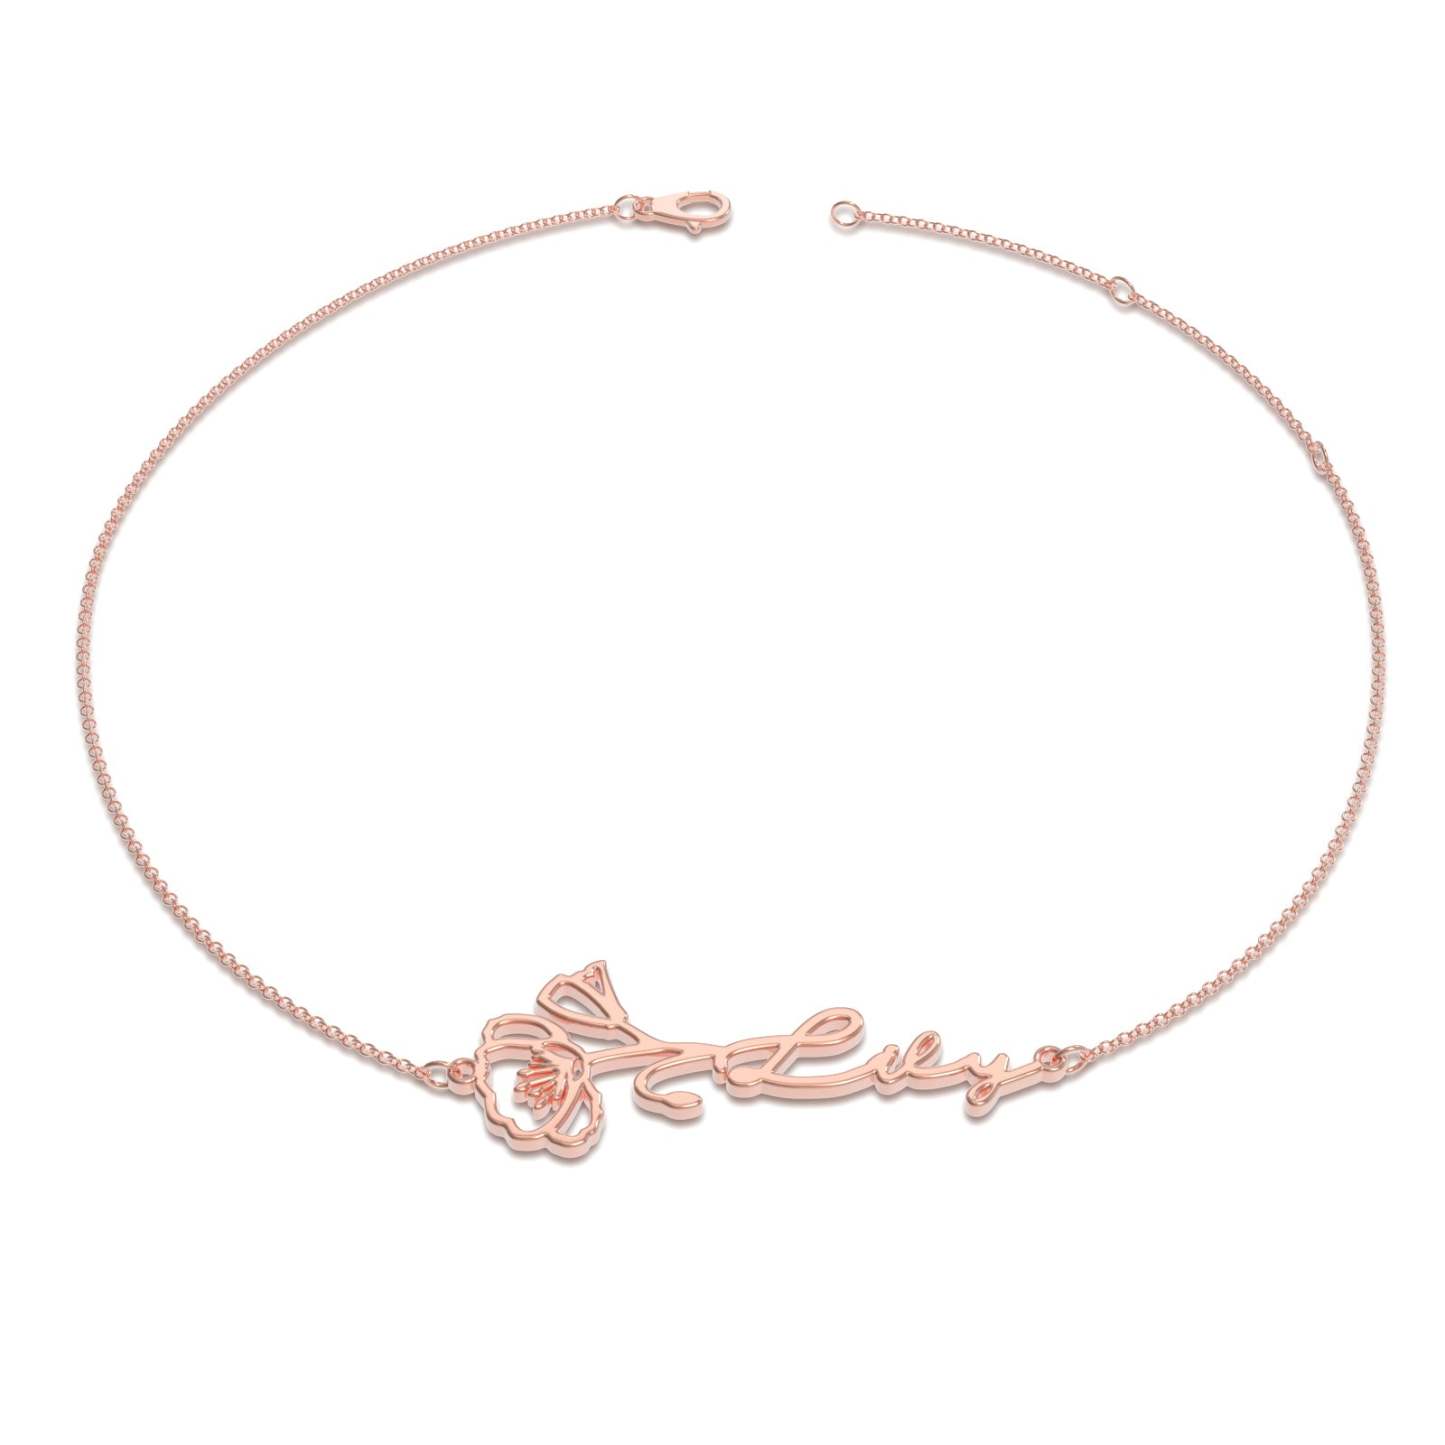 Custom Birthflower Name Bracelet, The Best Gift For You - 